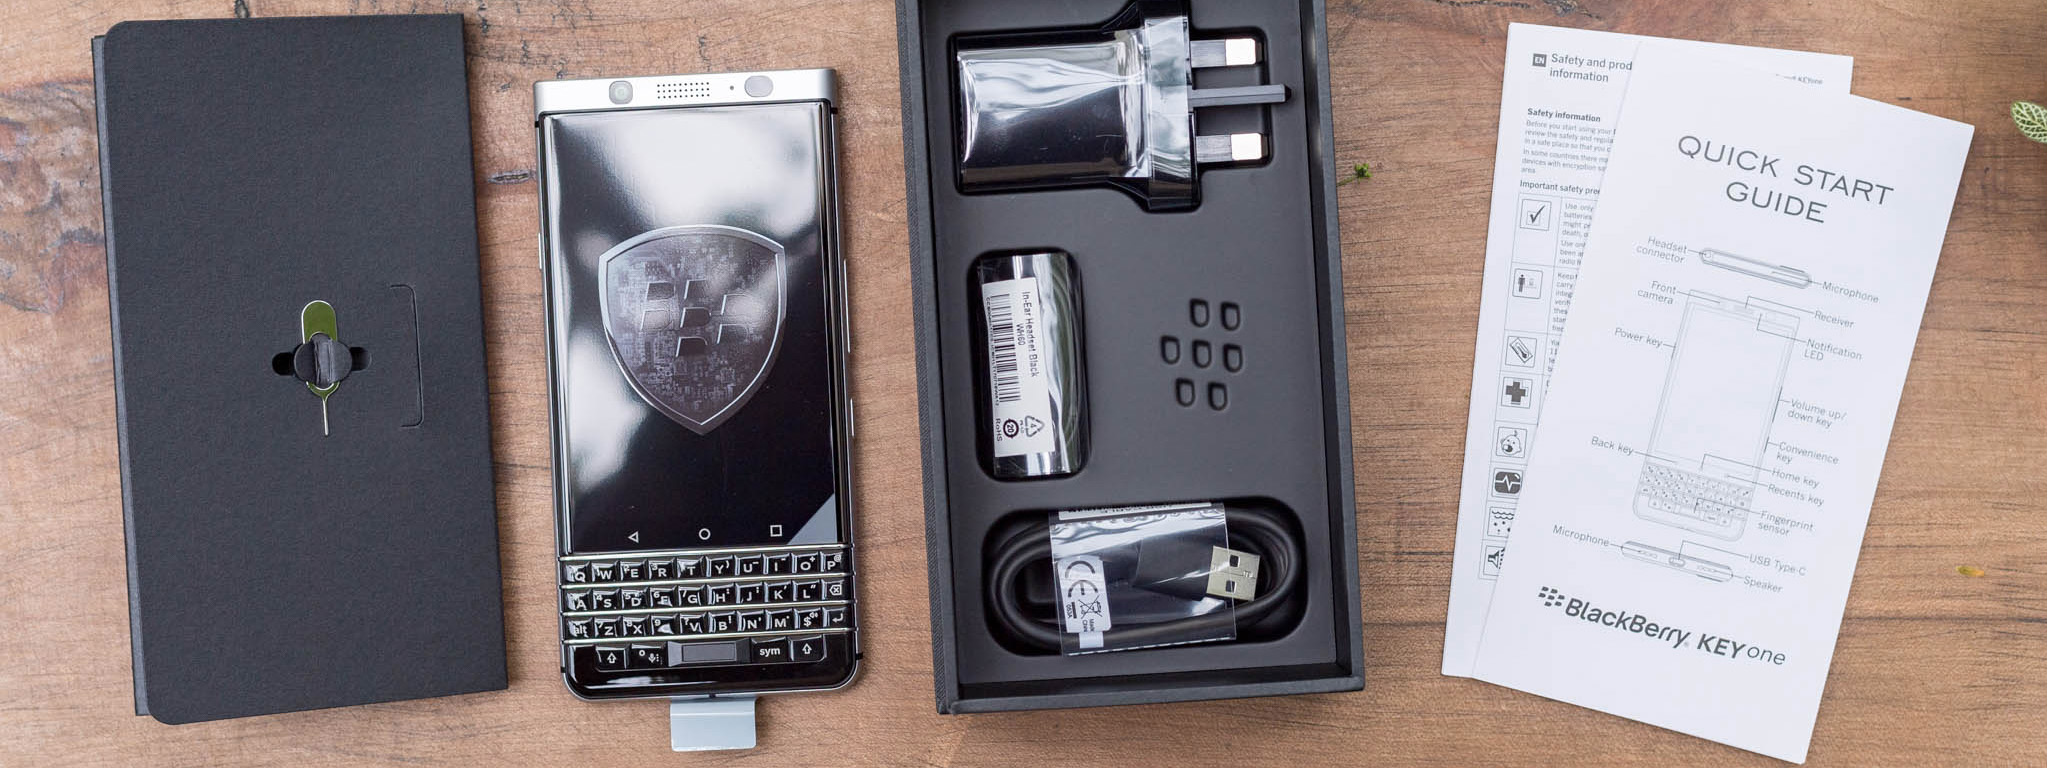 [Đập hộp] BlackBerry KEYone chính hãng, giá 14.990.000 đồng